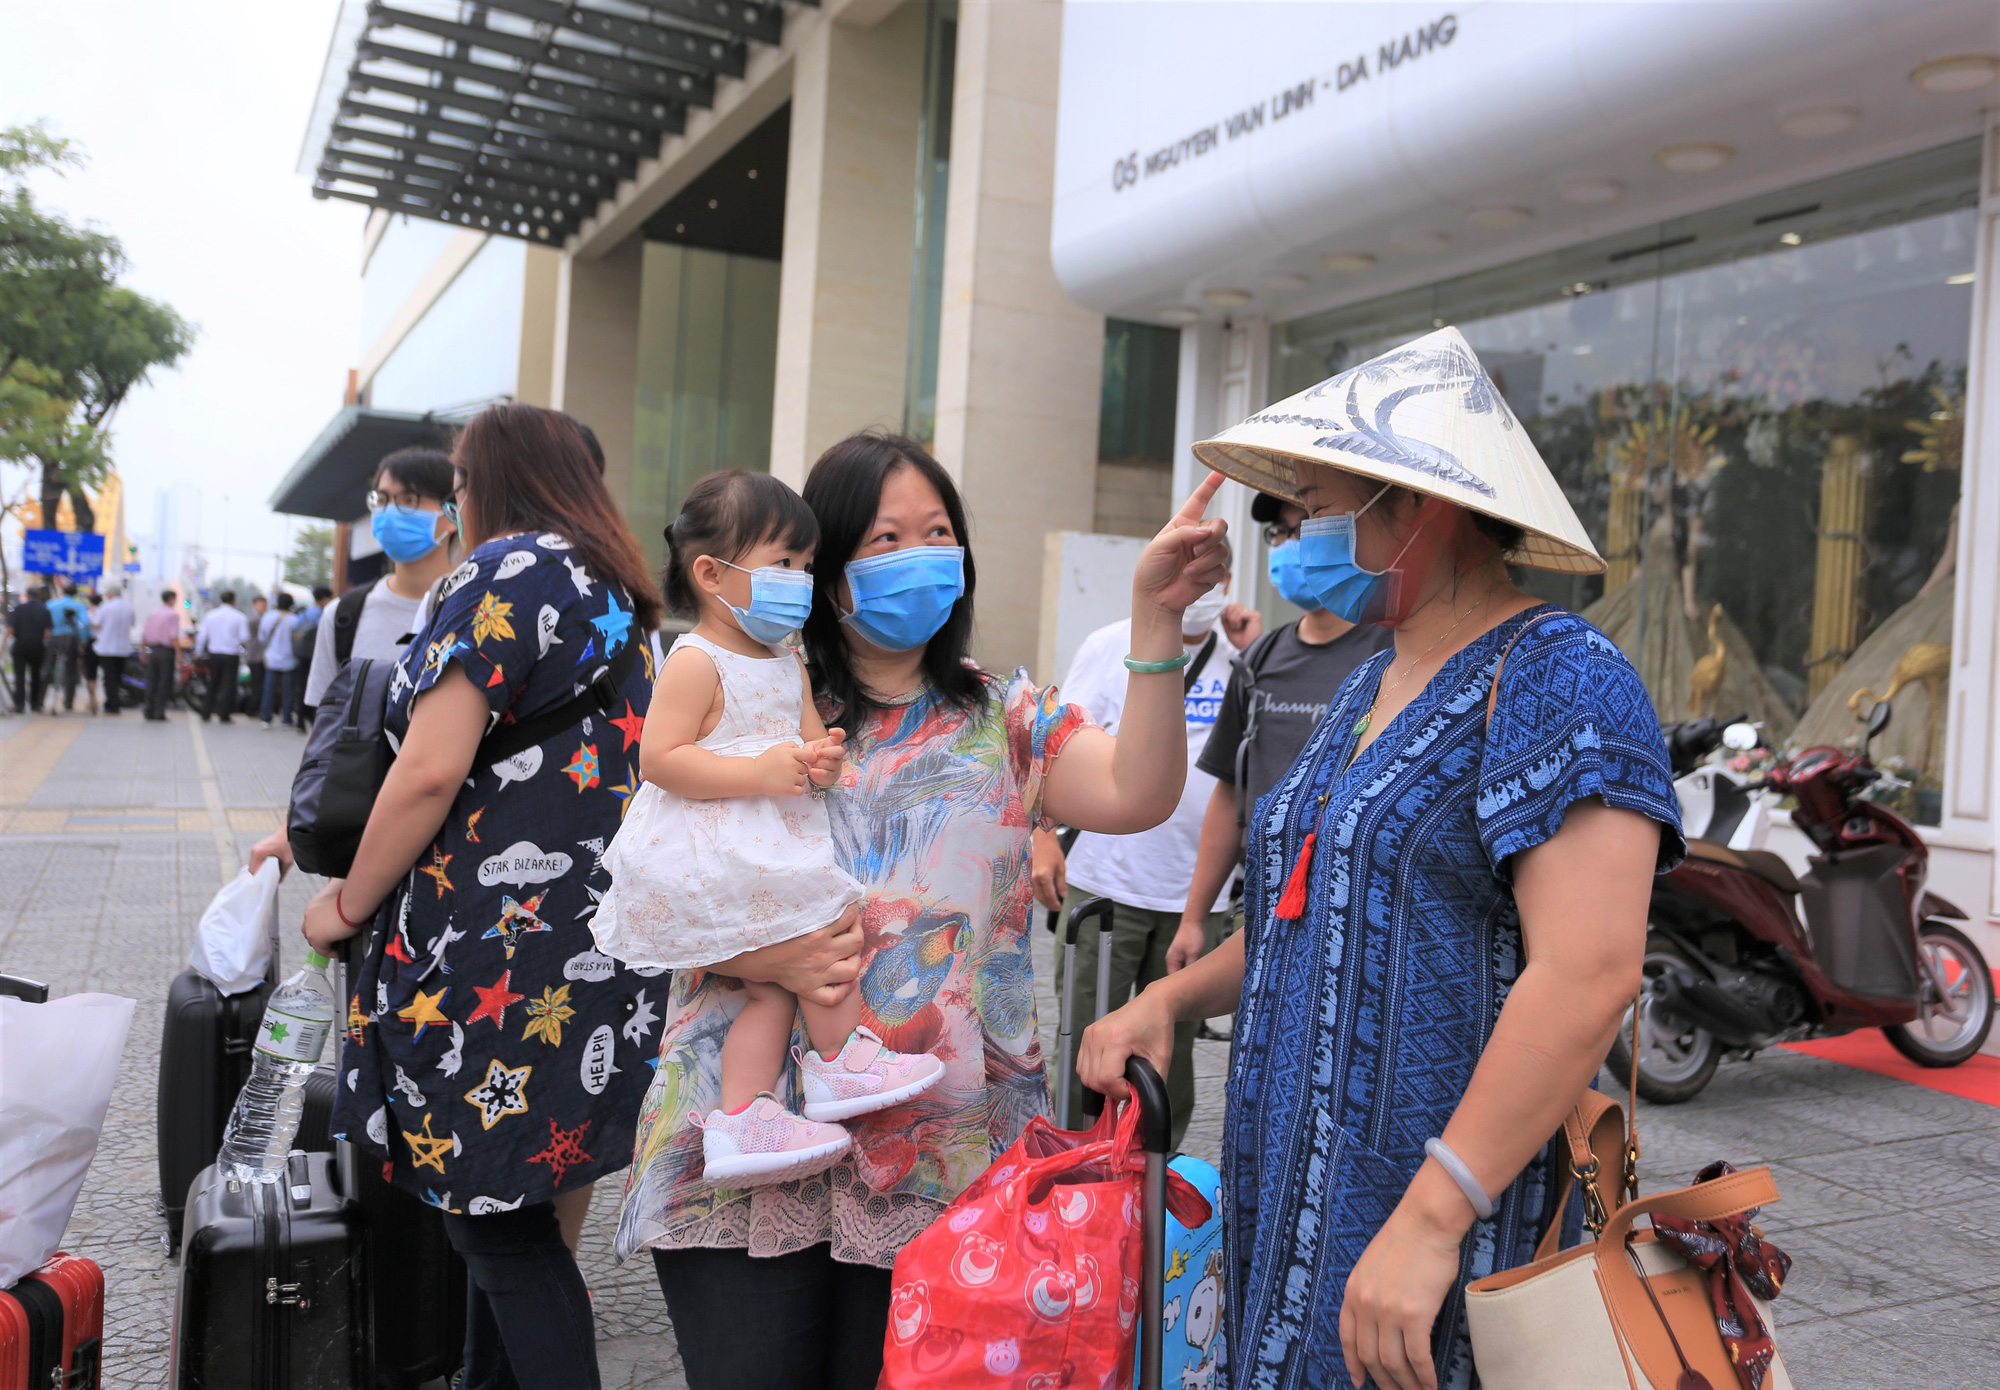 Du khách nước ngoài vui mừng rời khu cách ly ở Đà Nẵng: Cảm ơn các bạn và chúng tôi sẽ quay lại vào một ngày thuận lợi hơn - Ảnh 8.